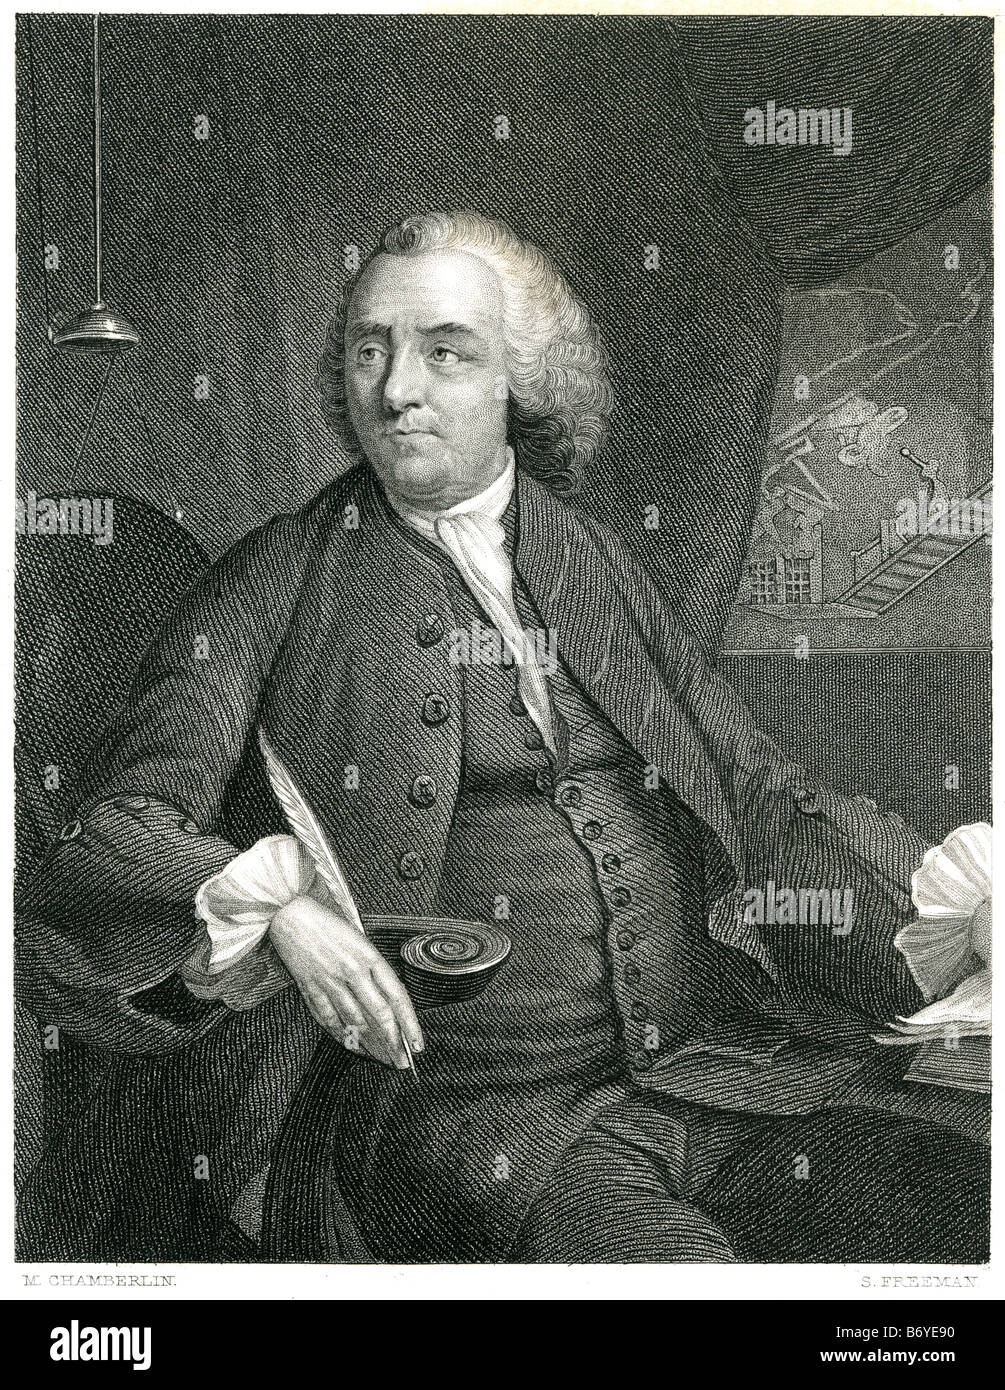 Benjamin Franklin (17 gennaio 1706 [O.S. 6 gennaio 1705] - Aprile 17, 1790) è stato uno dei padri fondatori degli Stati Uniti Foto Stock